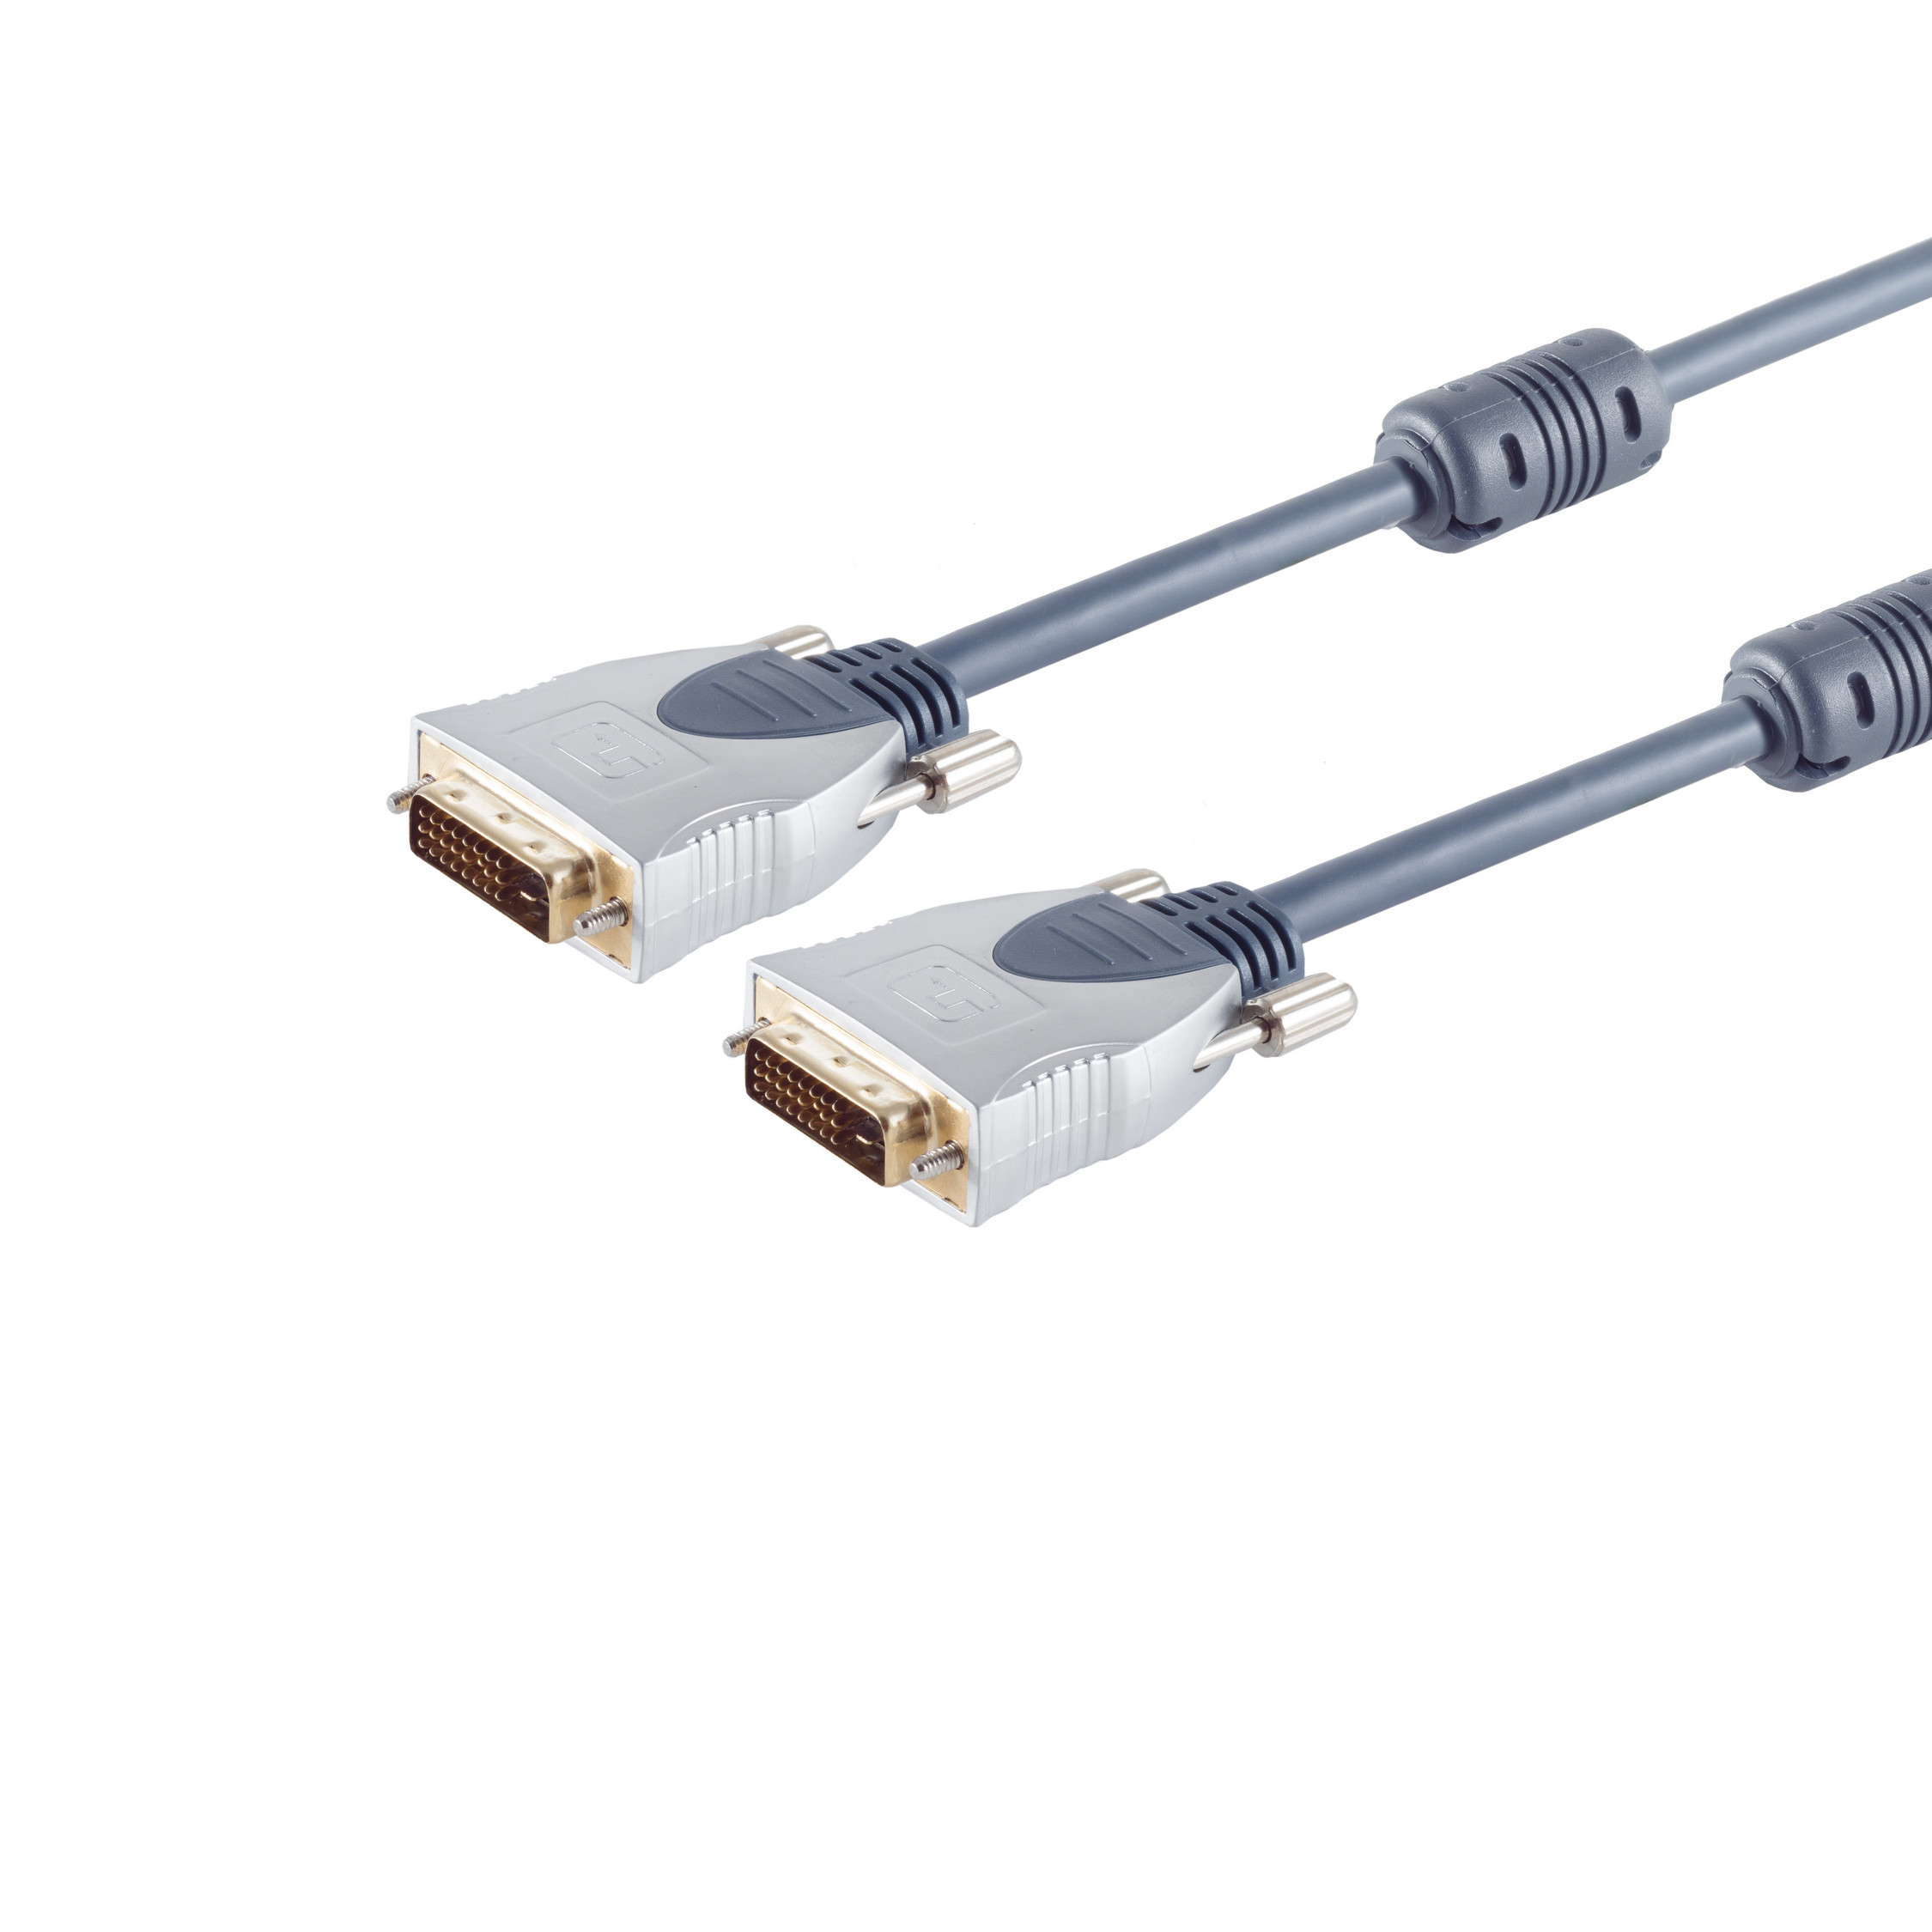 CONNECTIVITY Kabel 2x S/CONN DVI-D Audio/Video Home-Cinema Stecker, MAXIMUM 1,5m